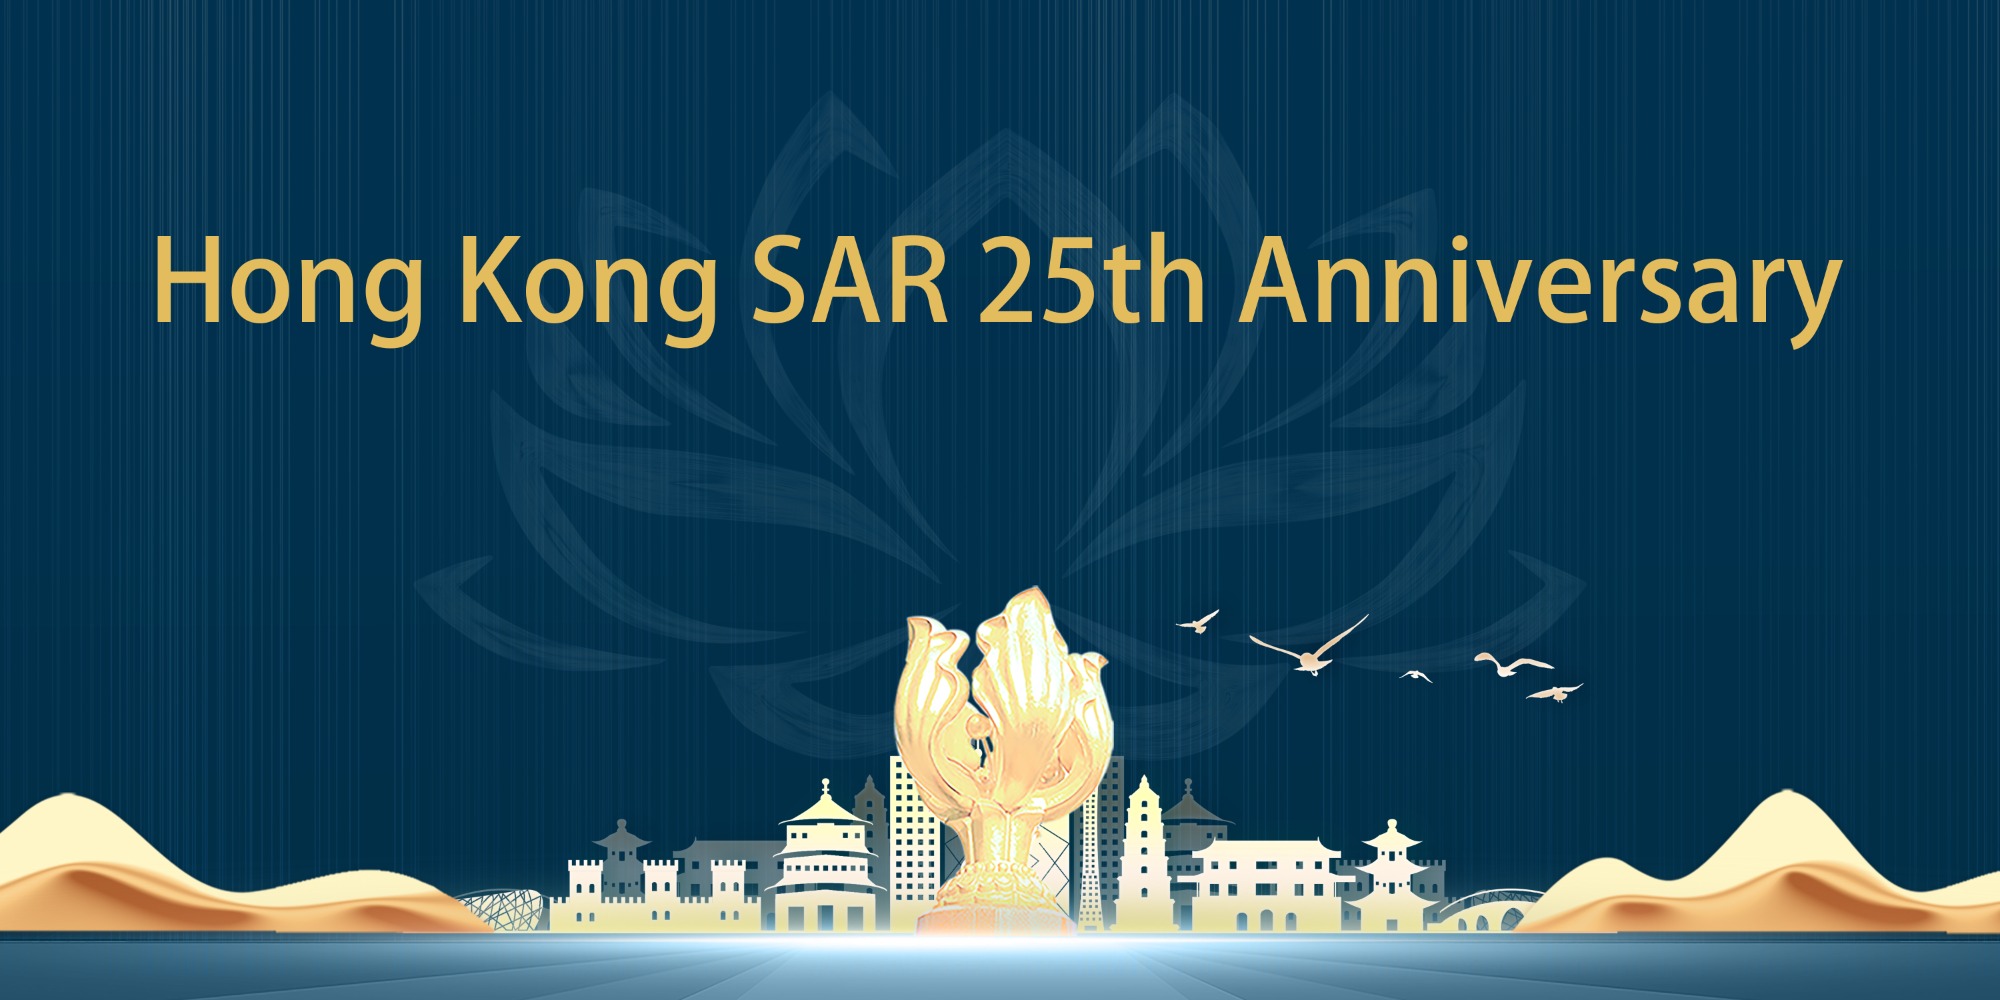 Holiday Notice of Hong Kong SAR 25th Anniversary